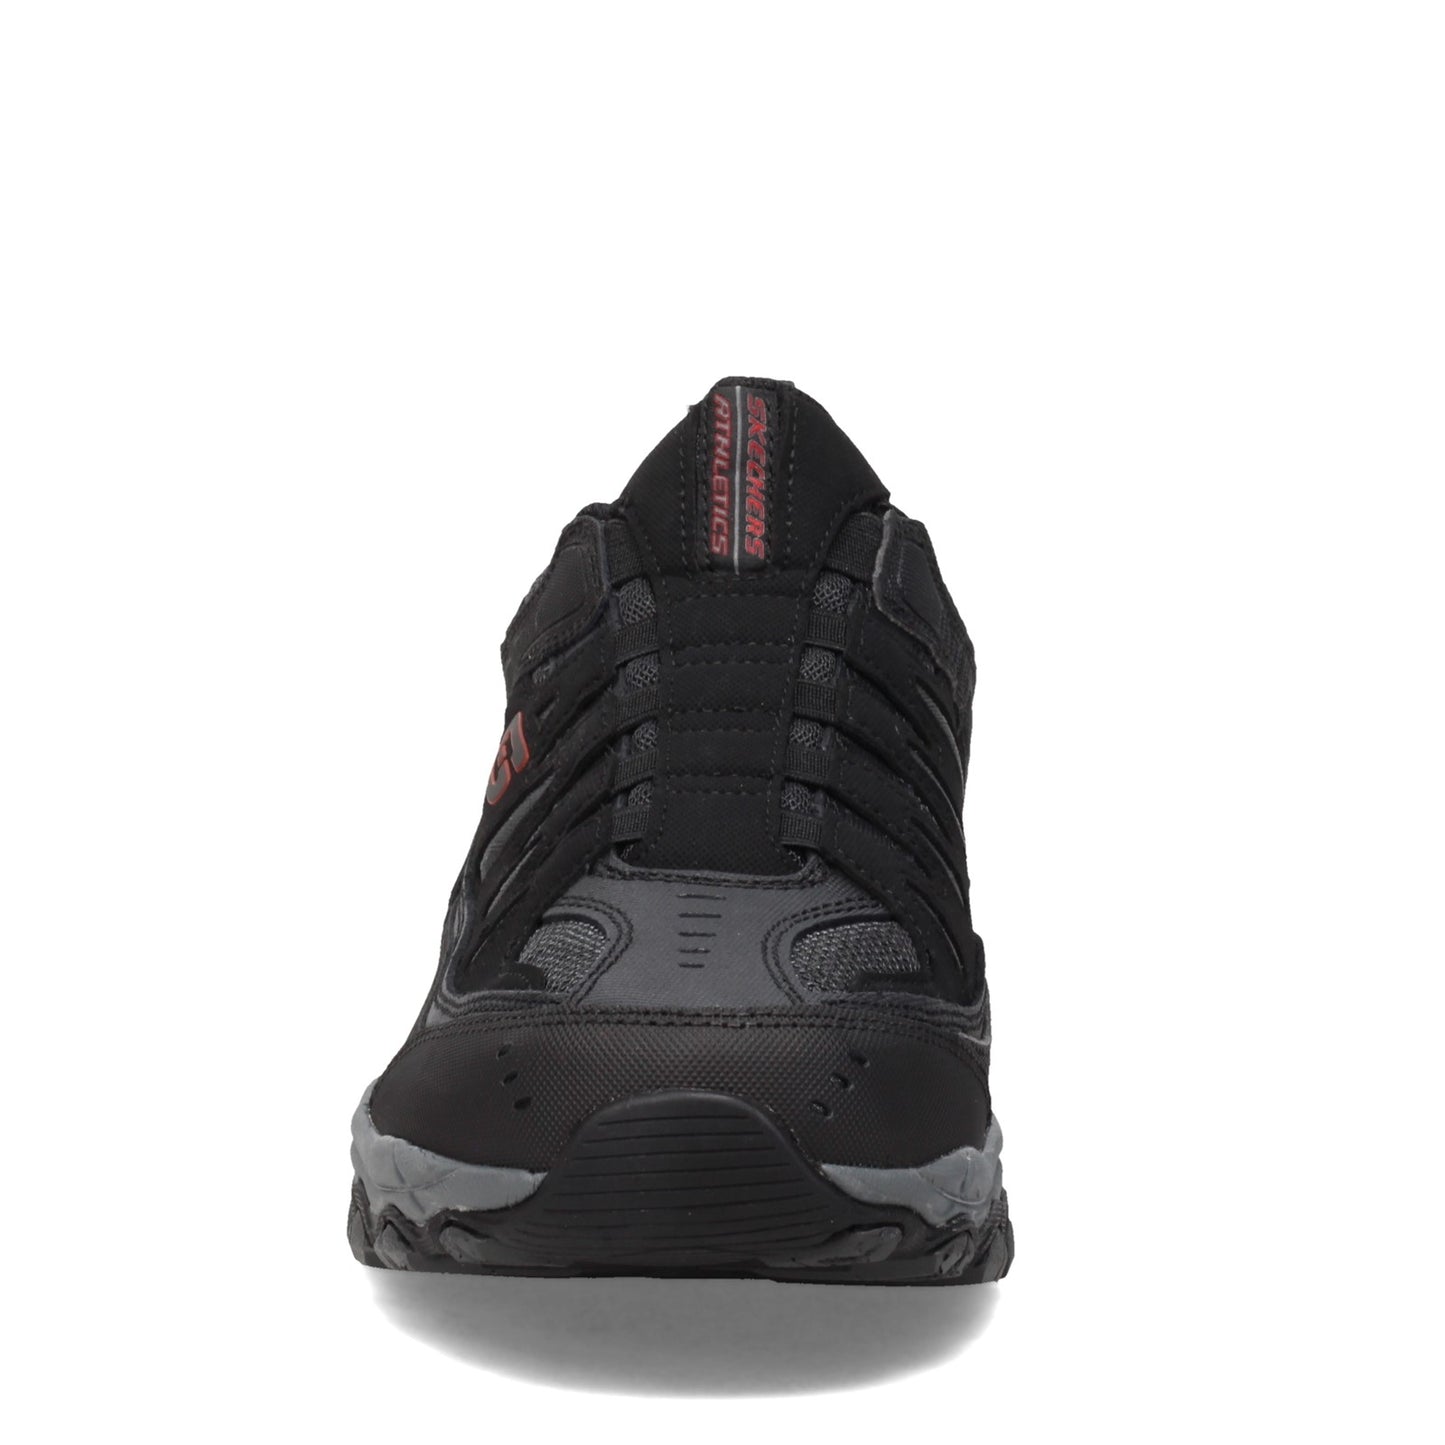 Peltz Shoes  Men's Skechers After Burn M. Fit Sneaker - Wide Width Black/Charcoal 51866EWW-BKCC